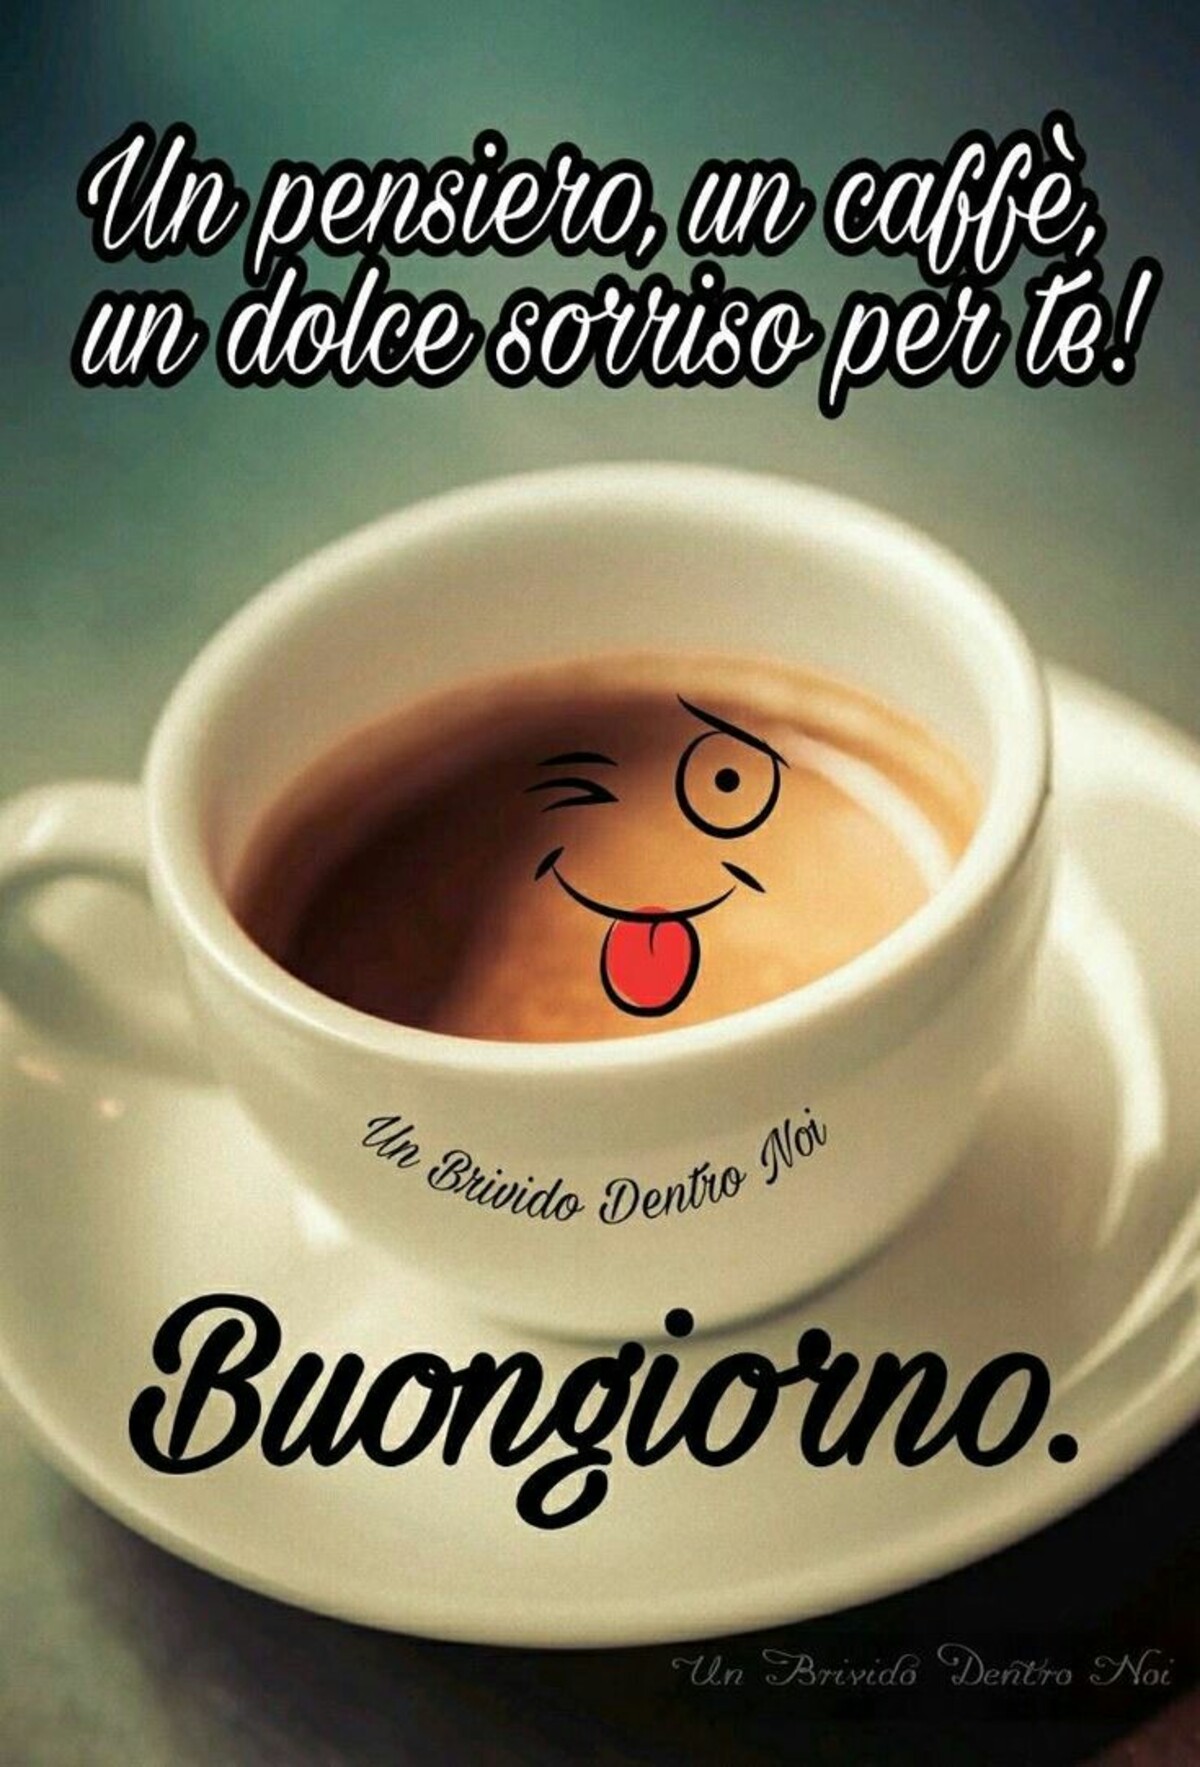 Buongiorno Caffe 10 Immagini Belle Da Condividere Bgiorno It